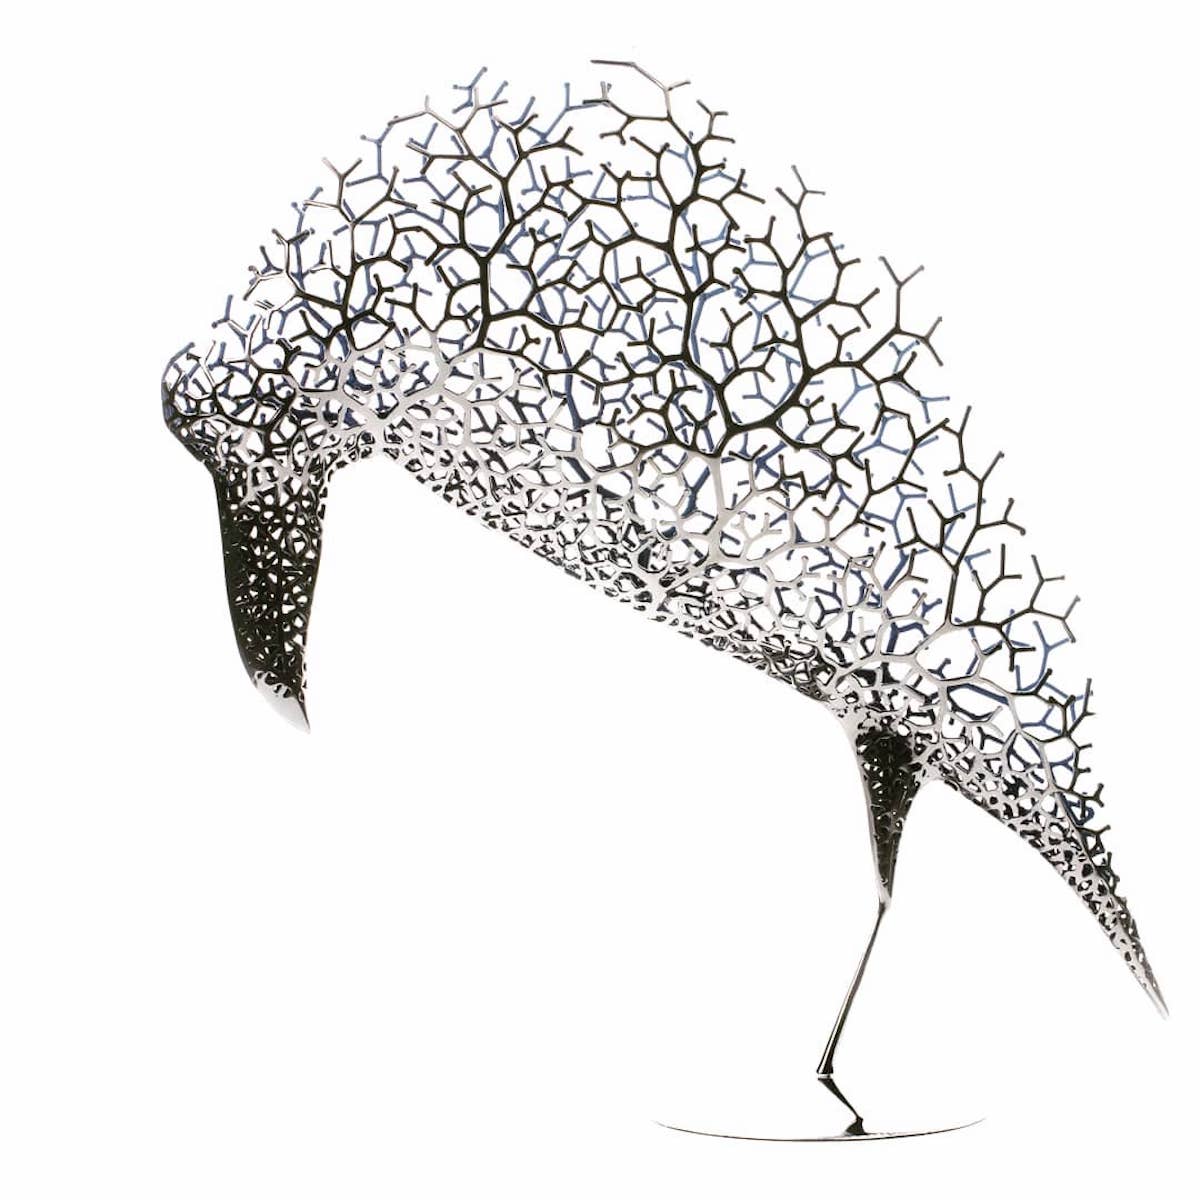 Esculturas de animales de acero inoxidable de Kang Dong Hyun